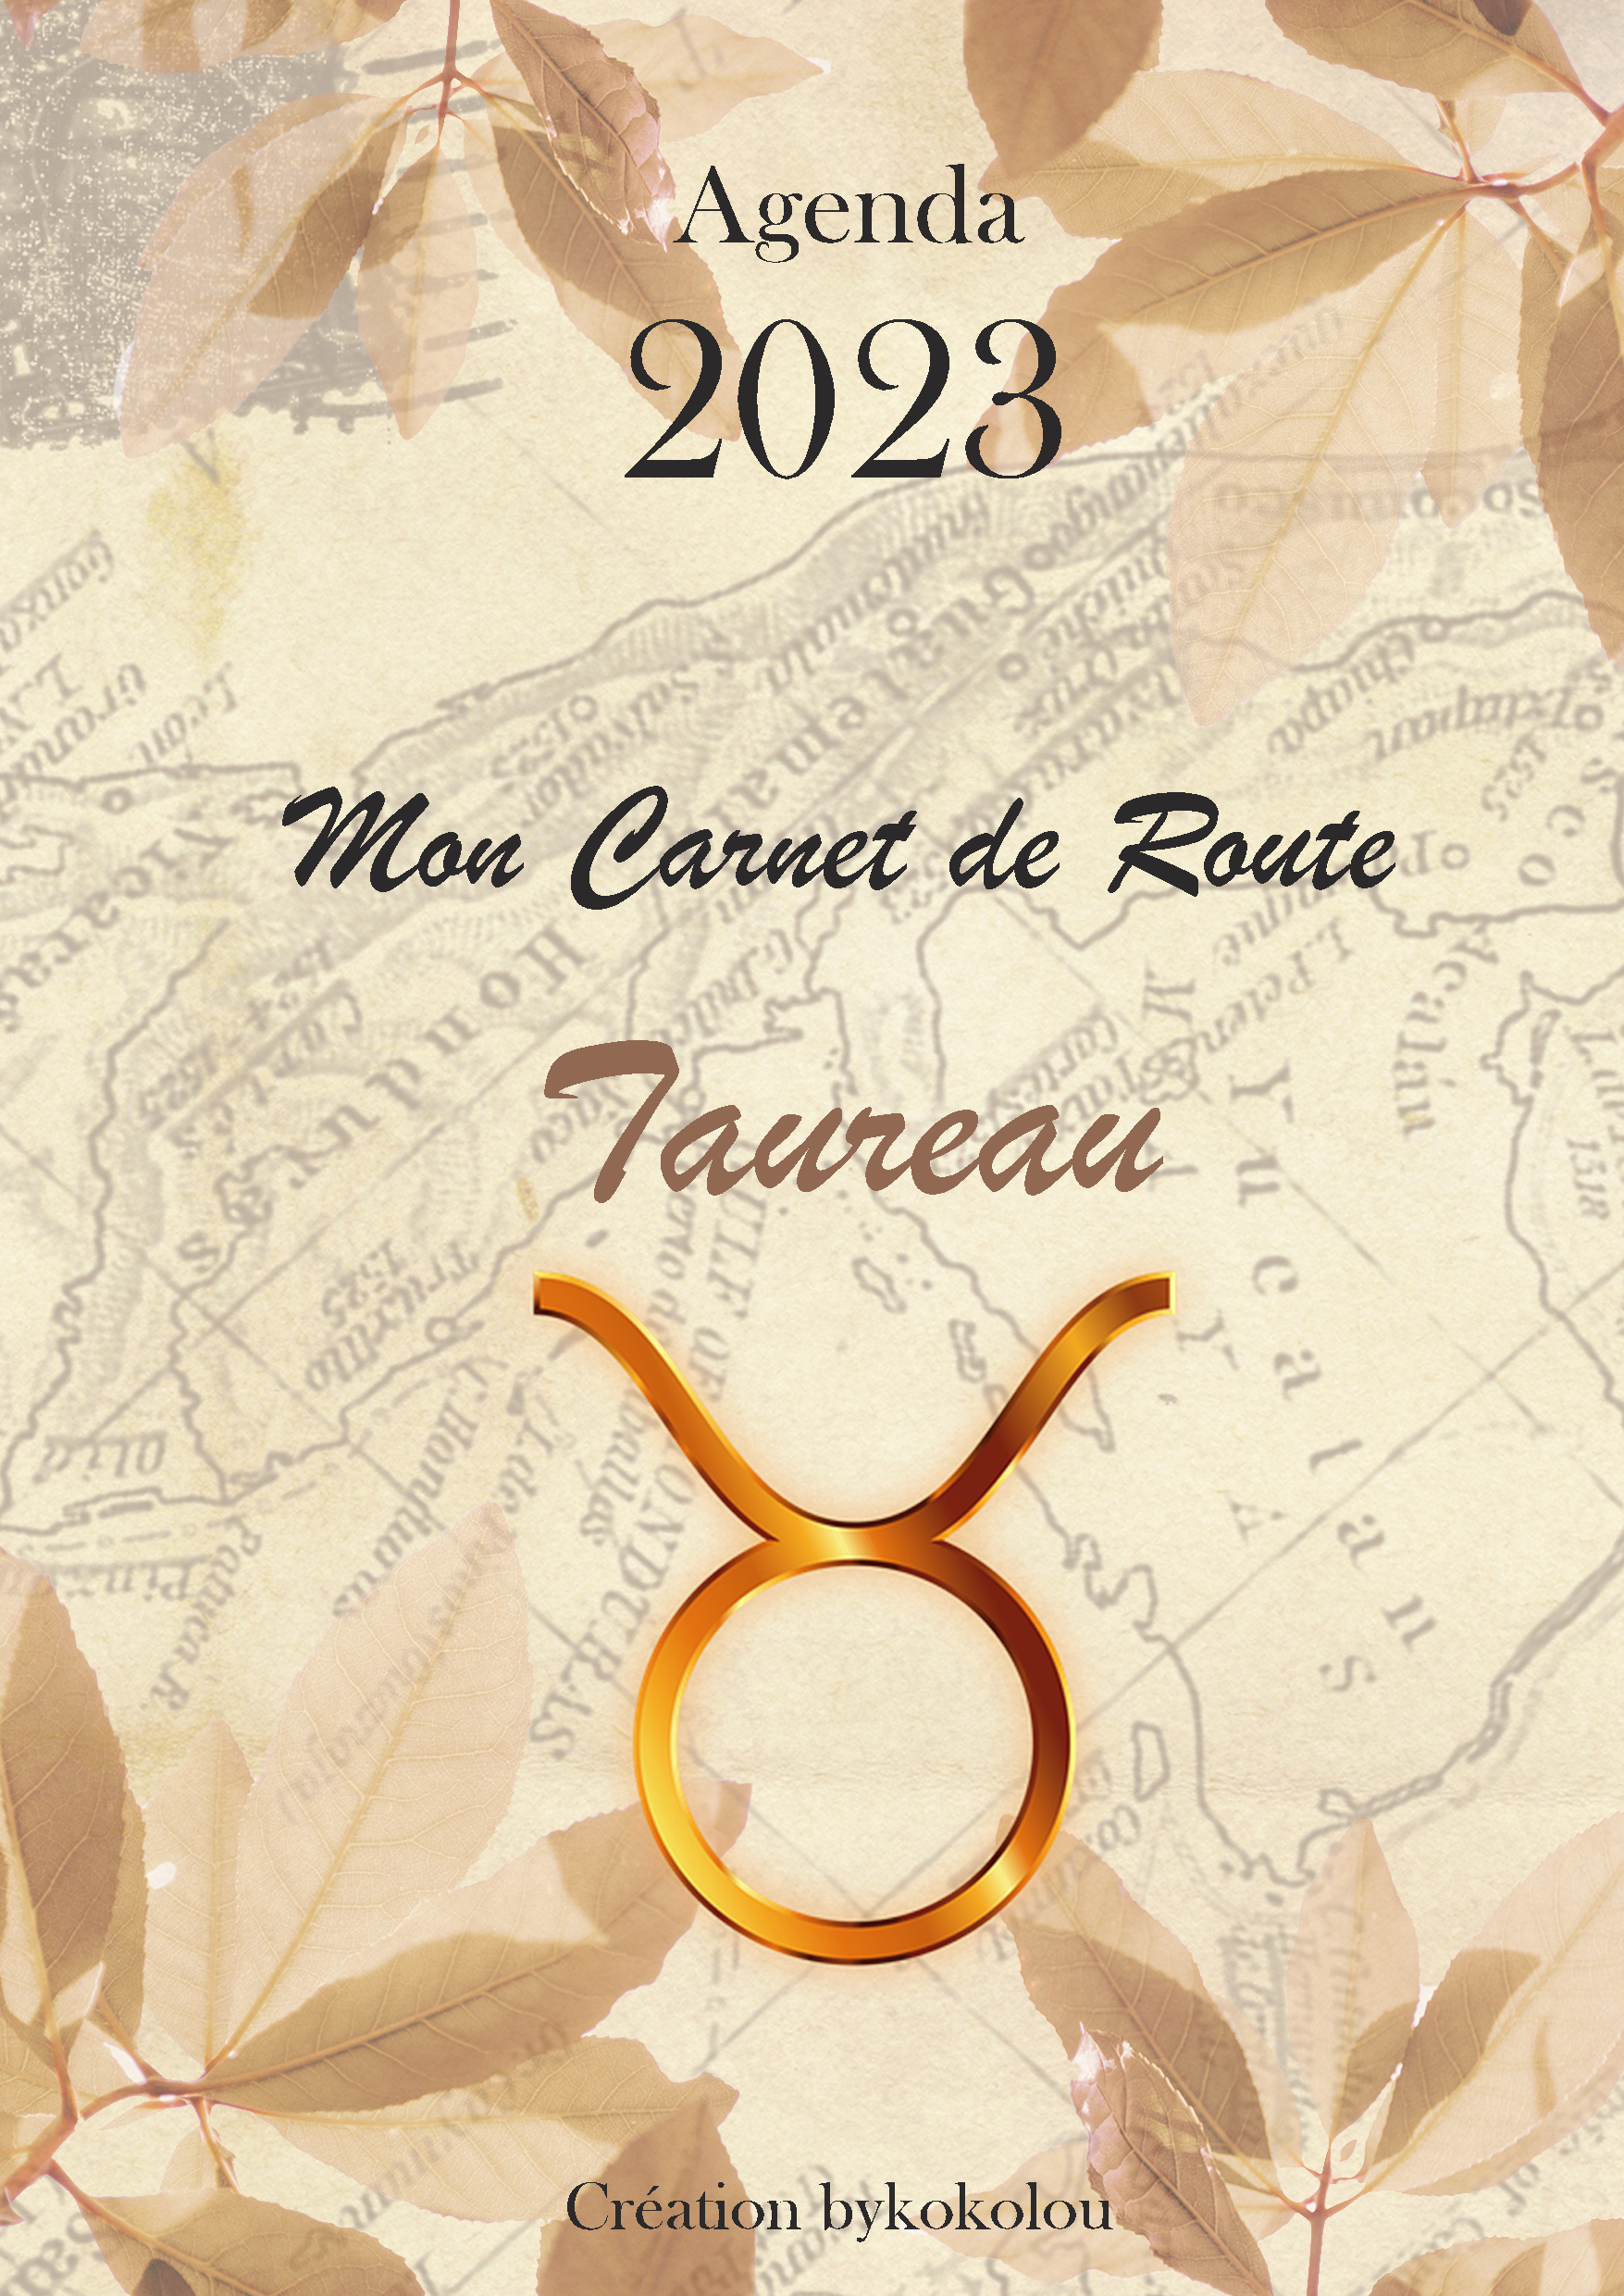 Taureau - Mon Carnet de Route 2023